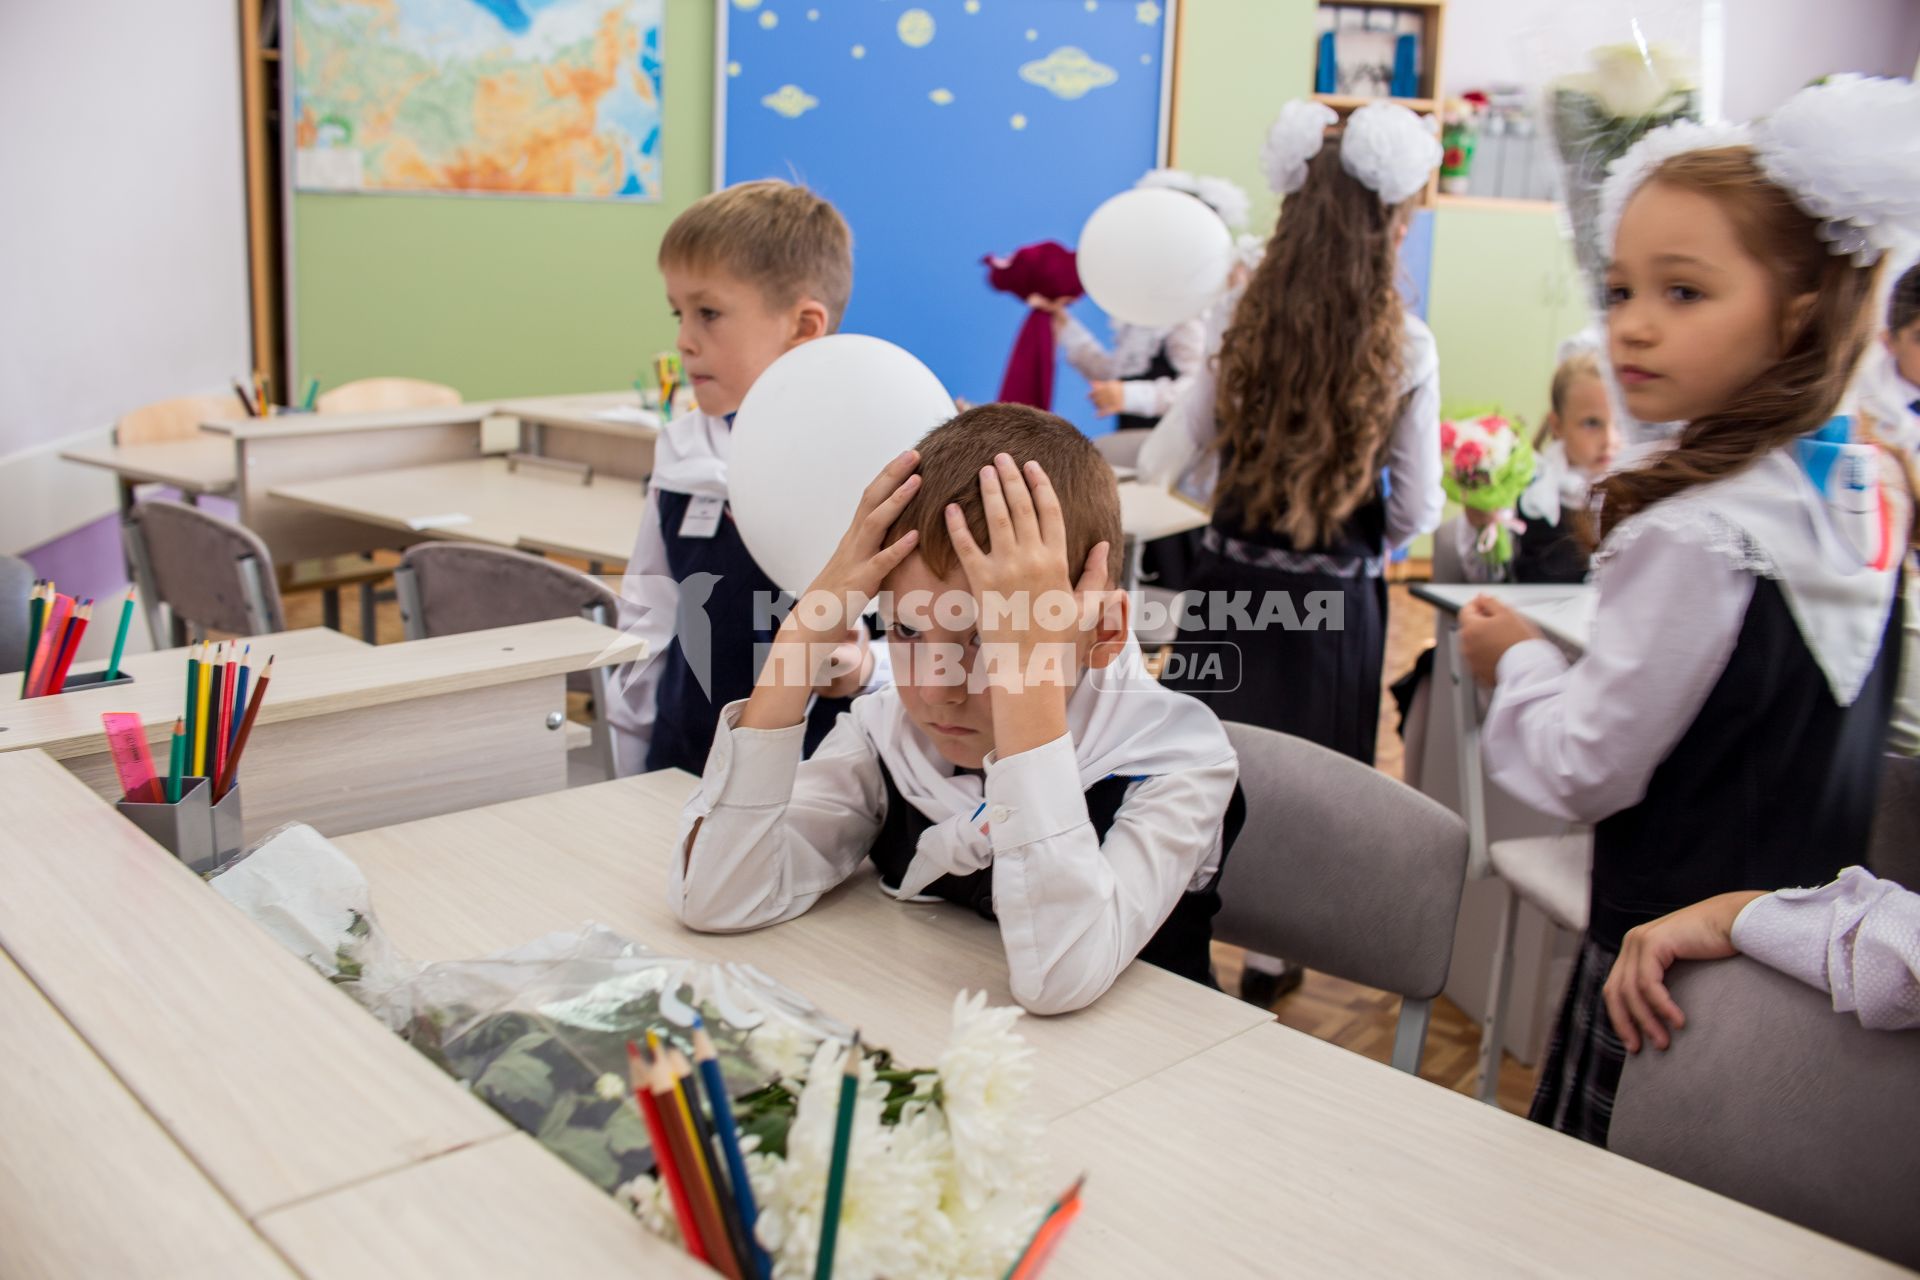 Челябинск.  Ученики в учебном классе после торжественной линейки, посвященной Дню знаний, в одной из школ города.